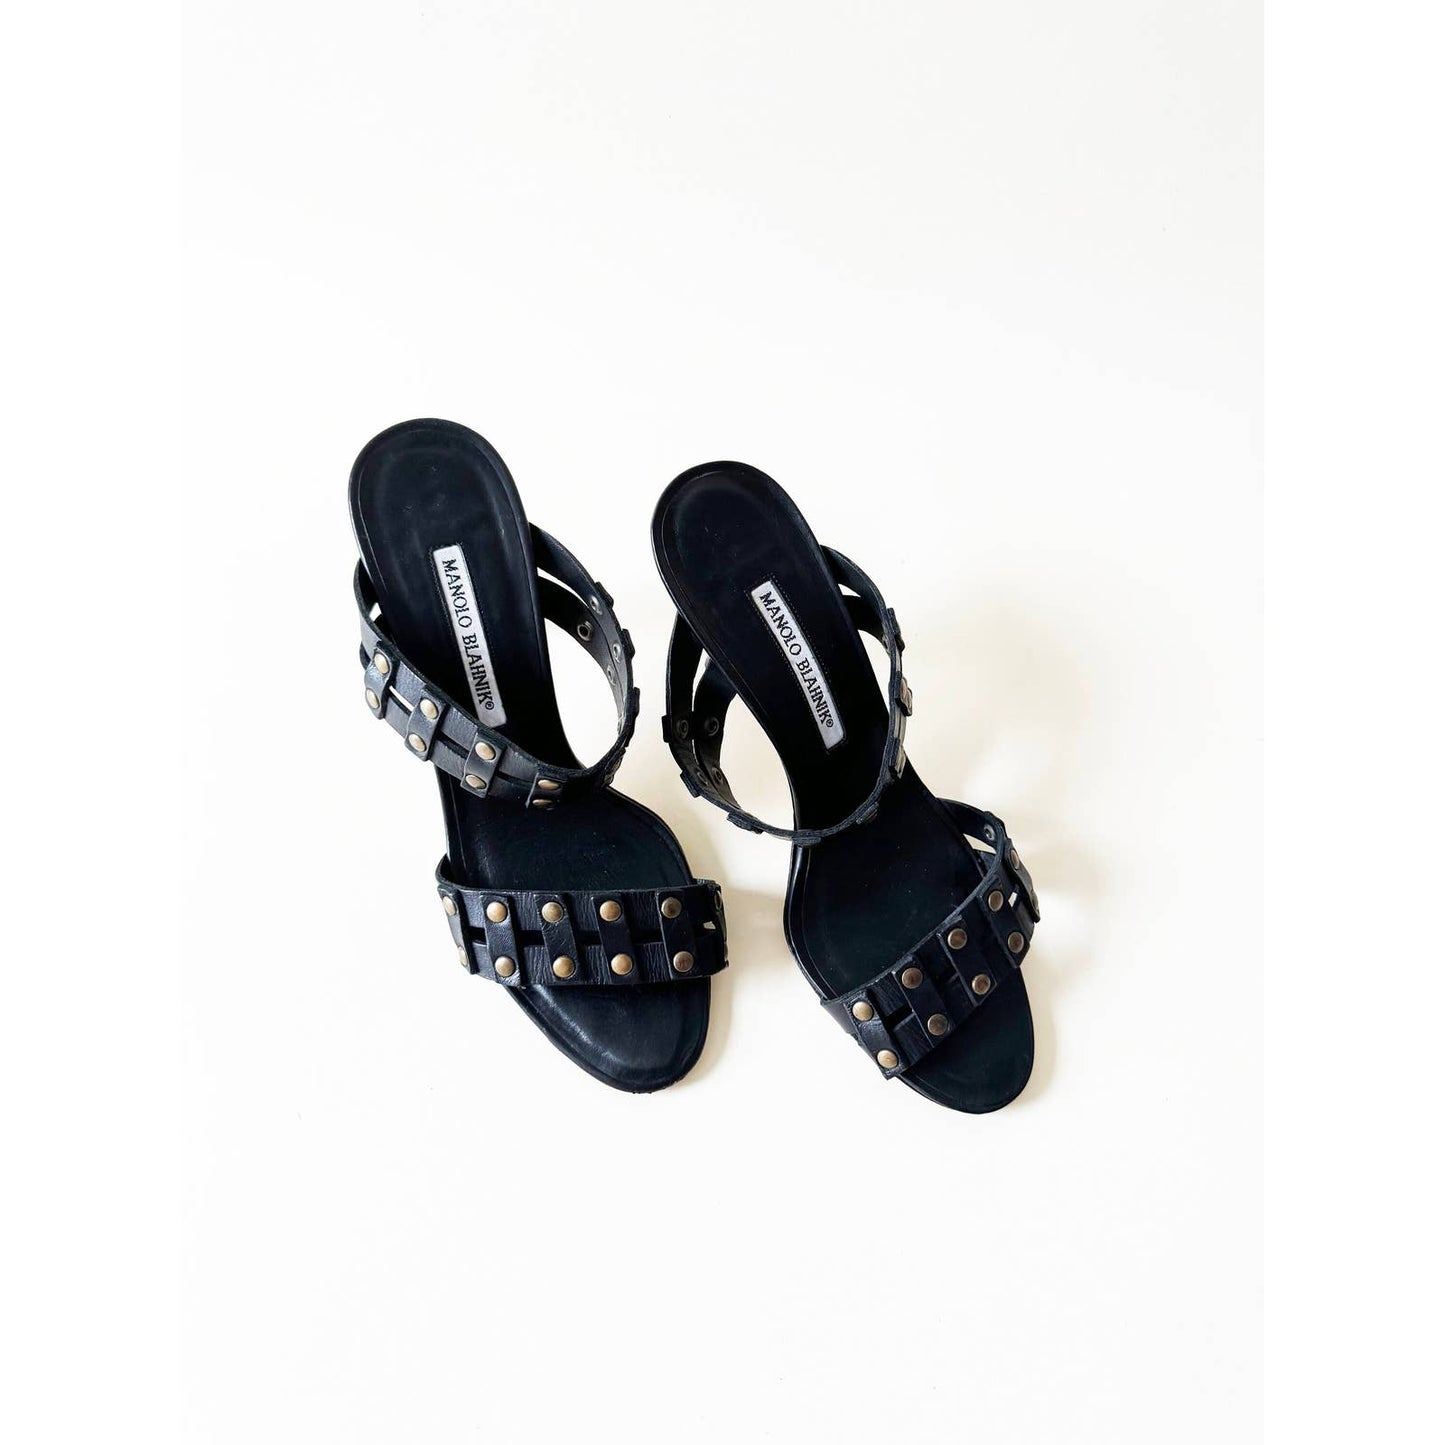 Vintage Manolo Blahnik Studded Boho Sandal Heels | Size 7 US 37.5IT